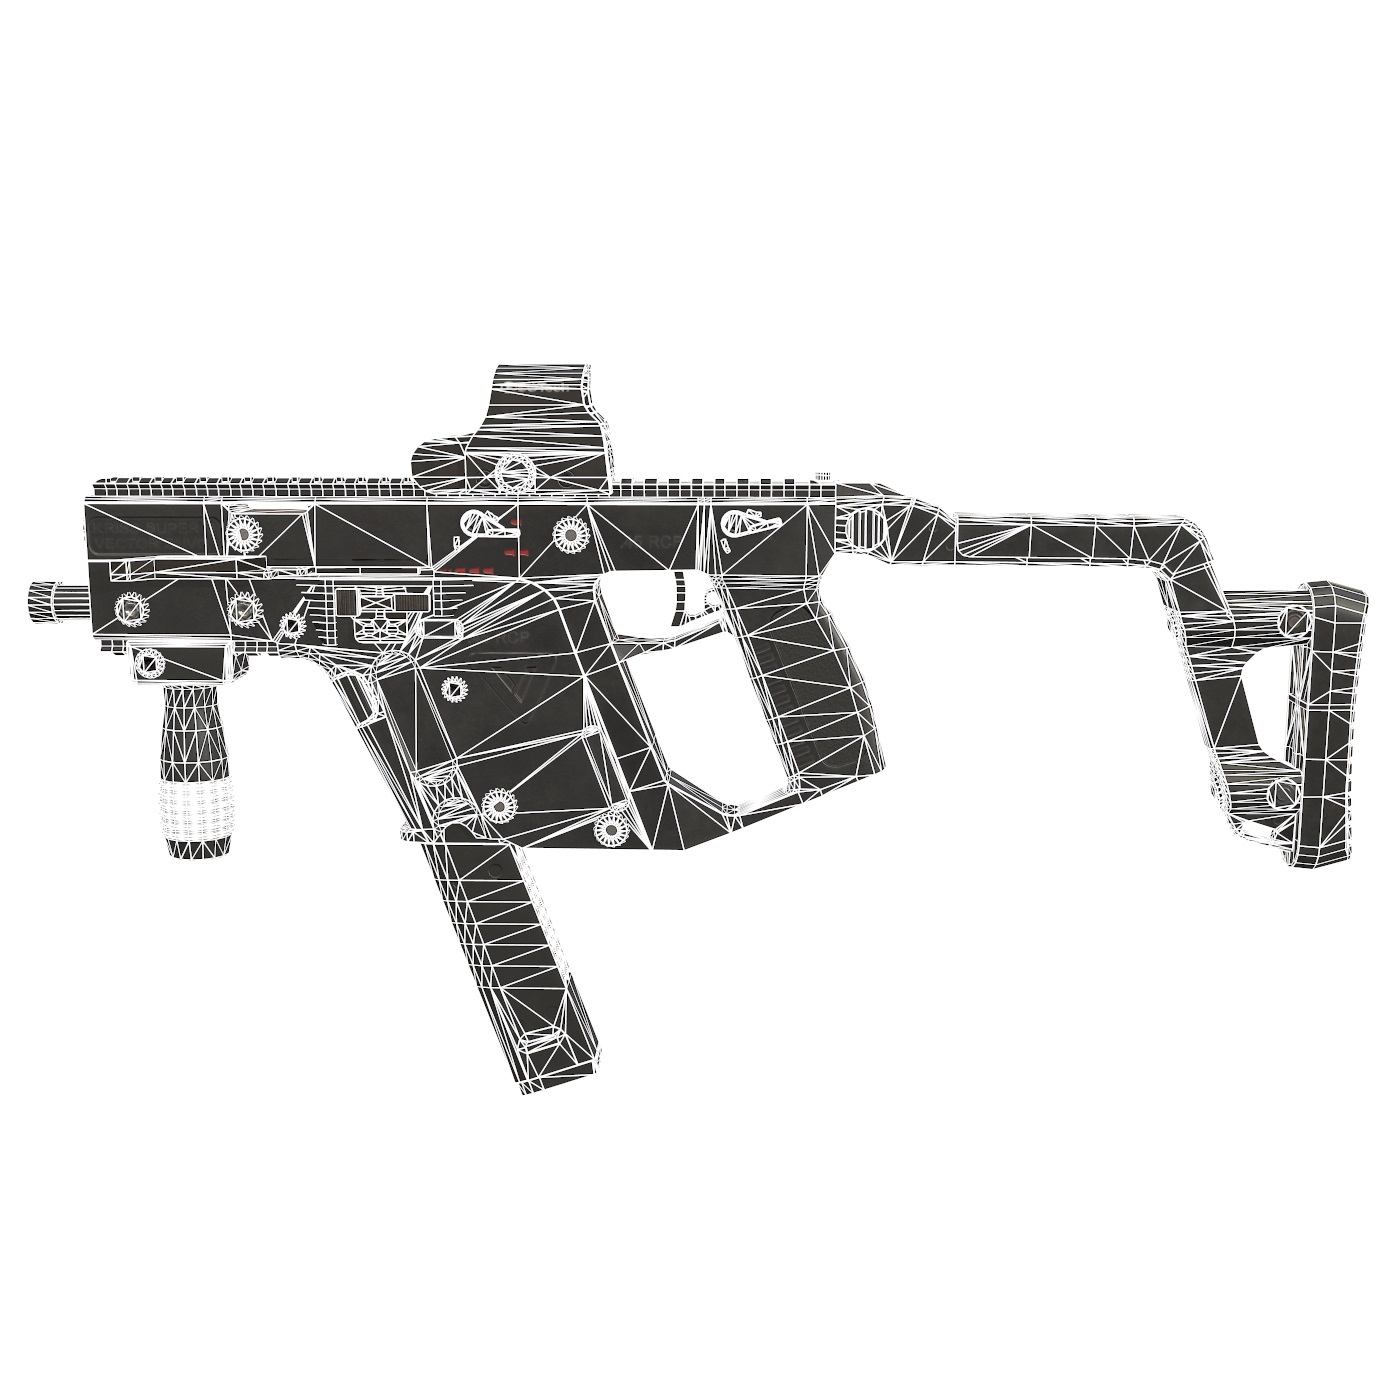 3D model kriss vector rifle - TurboSquid 1169116